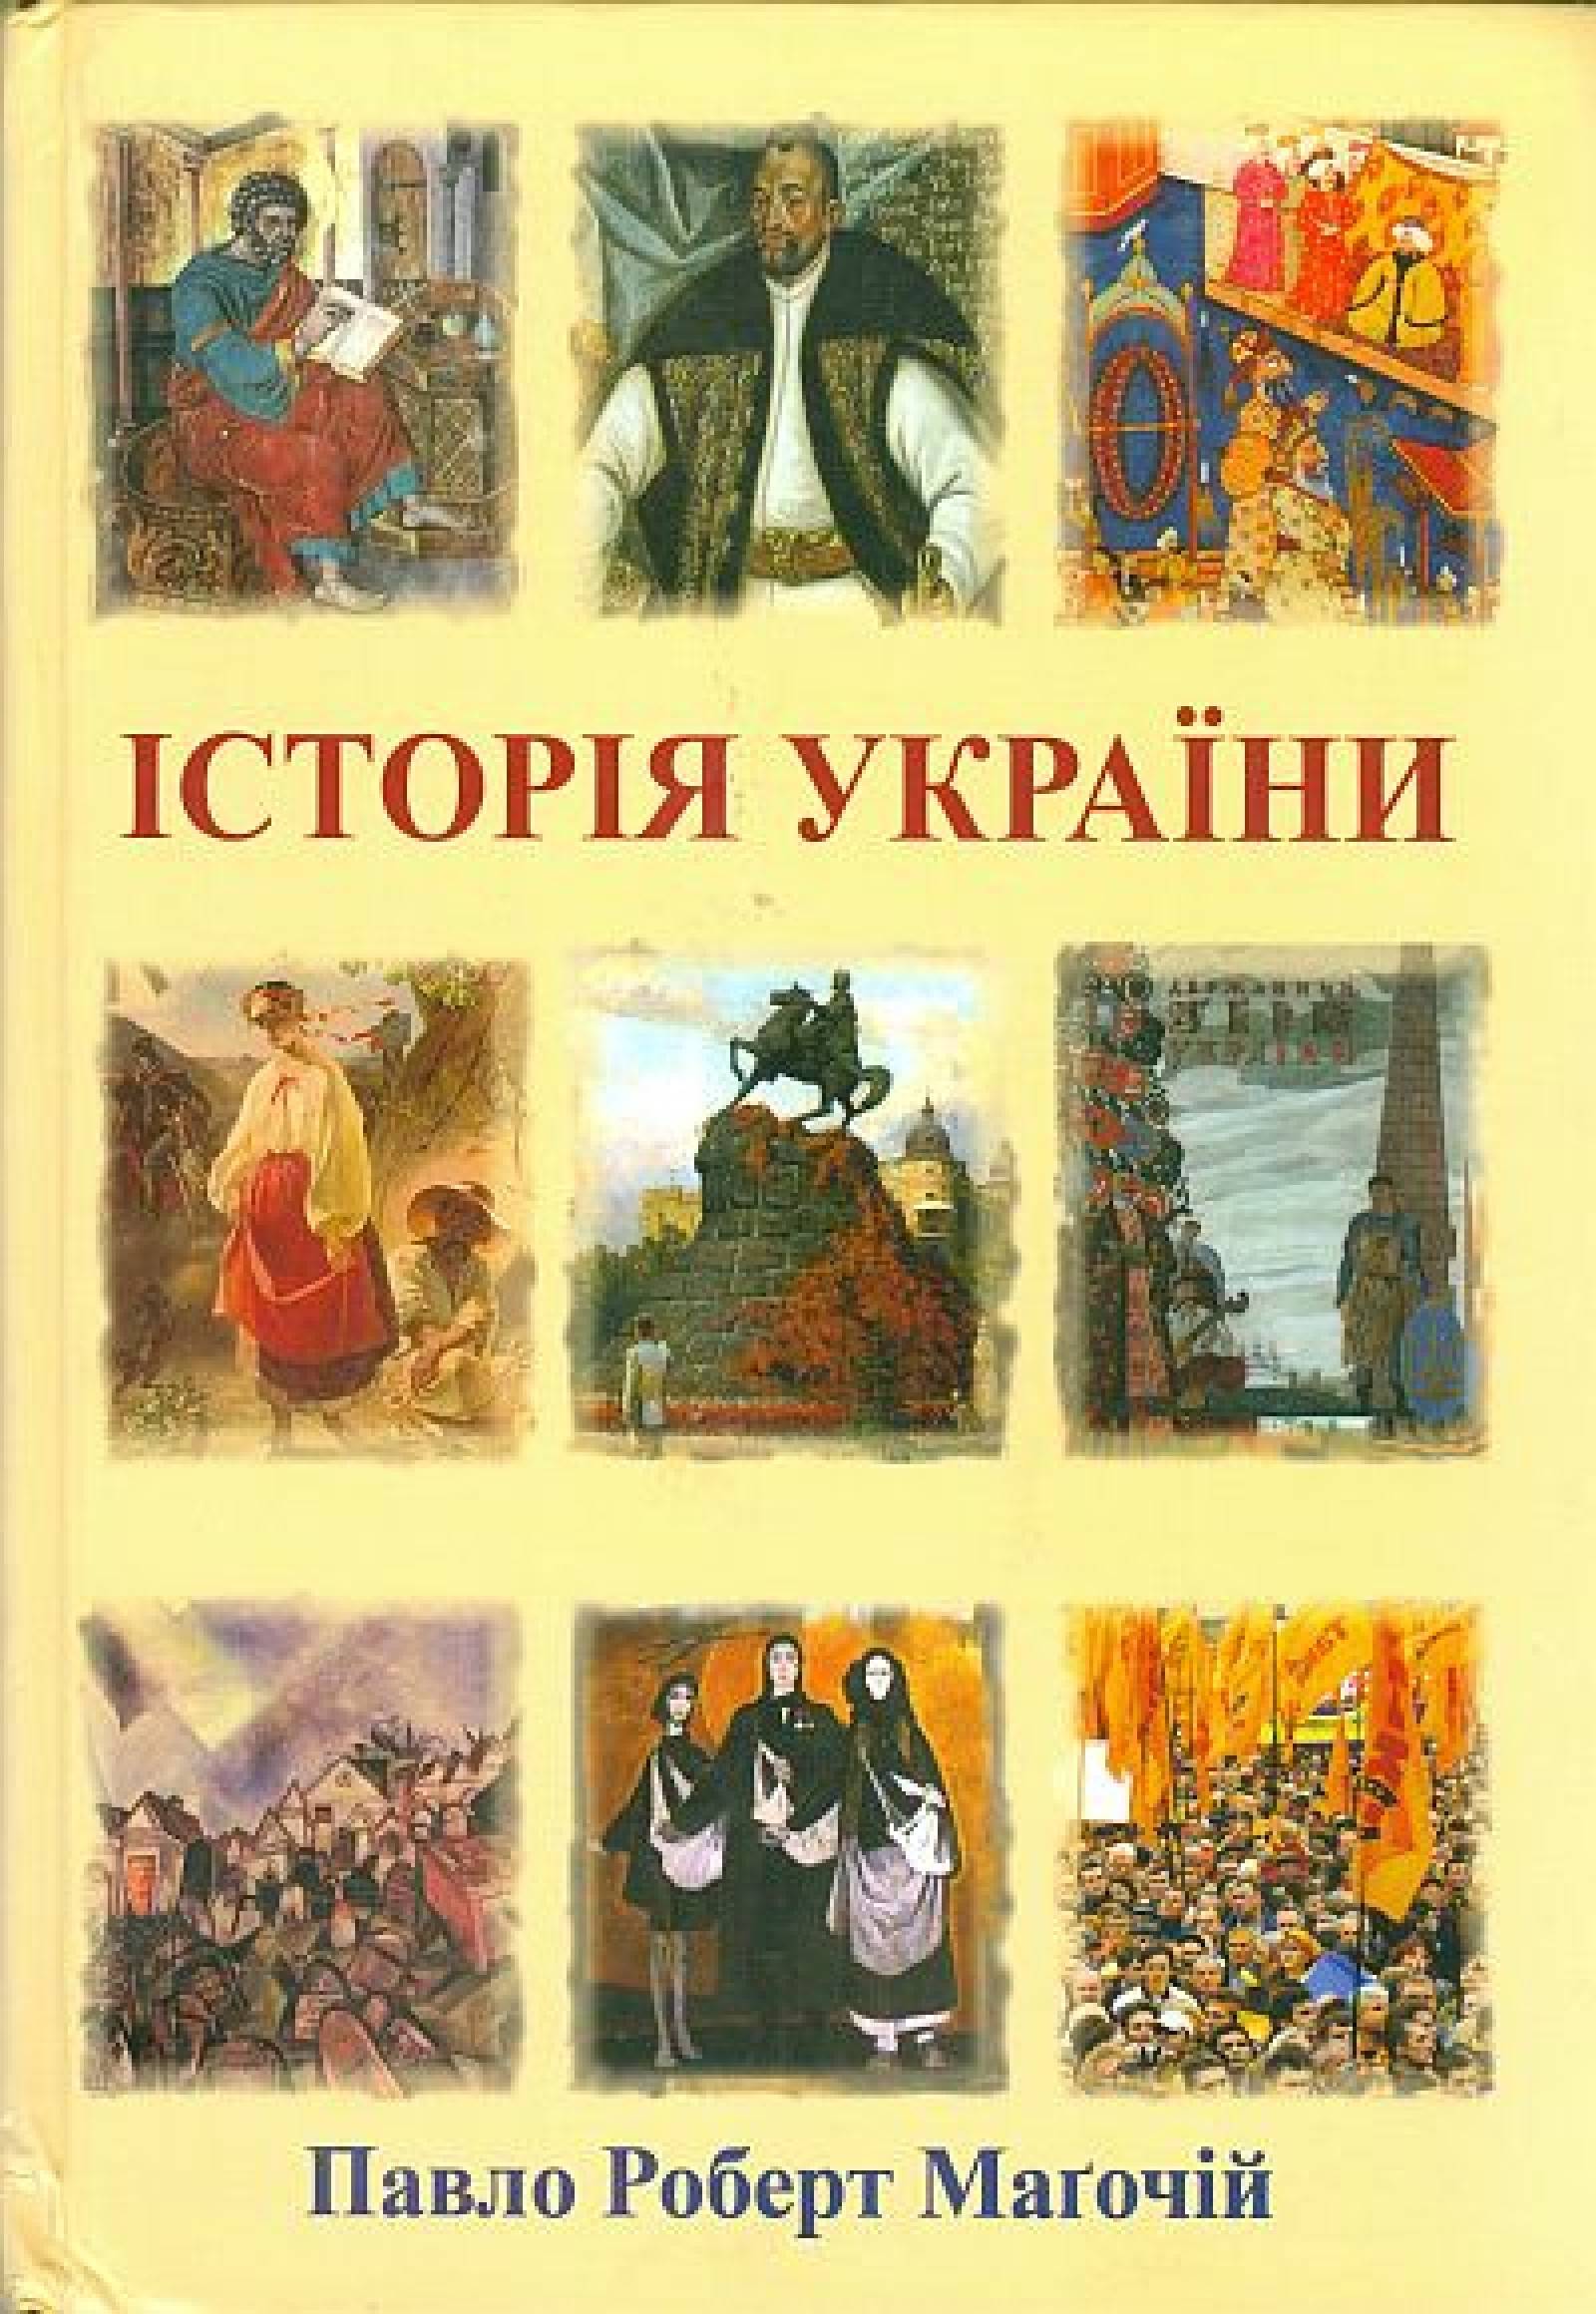 Istorija Ukrajini